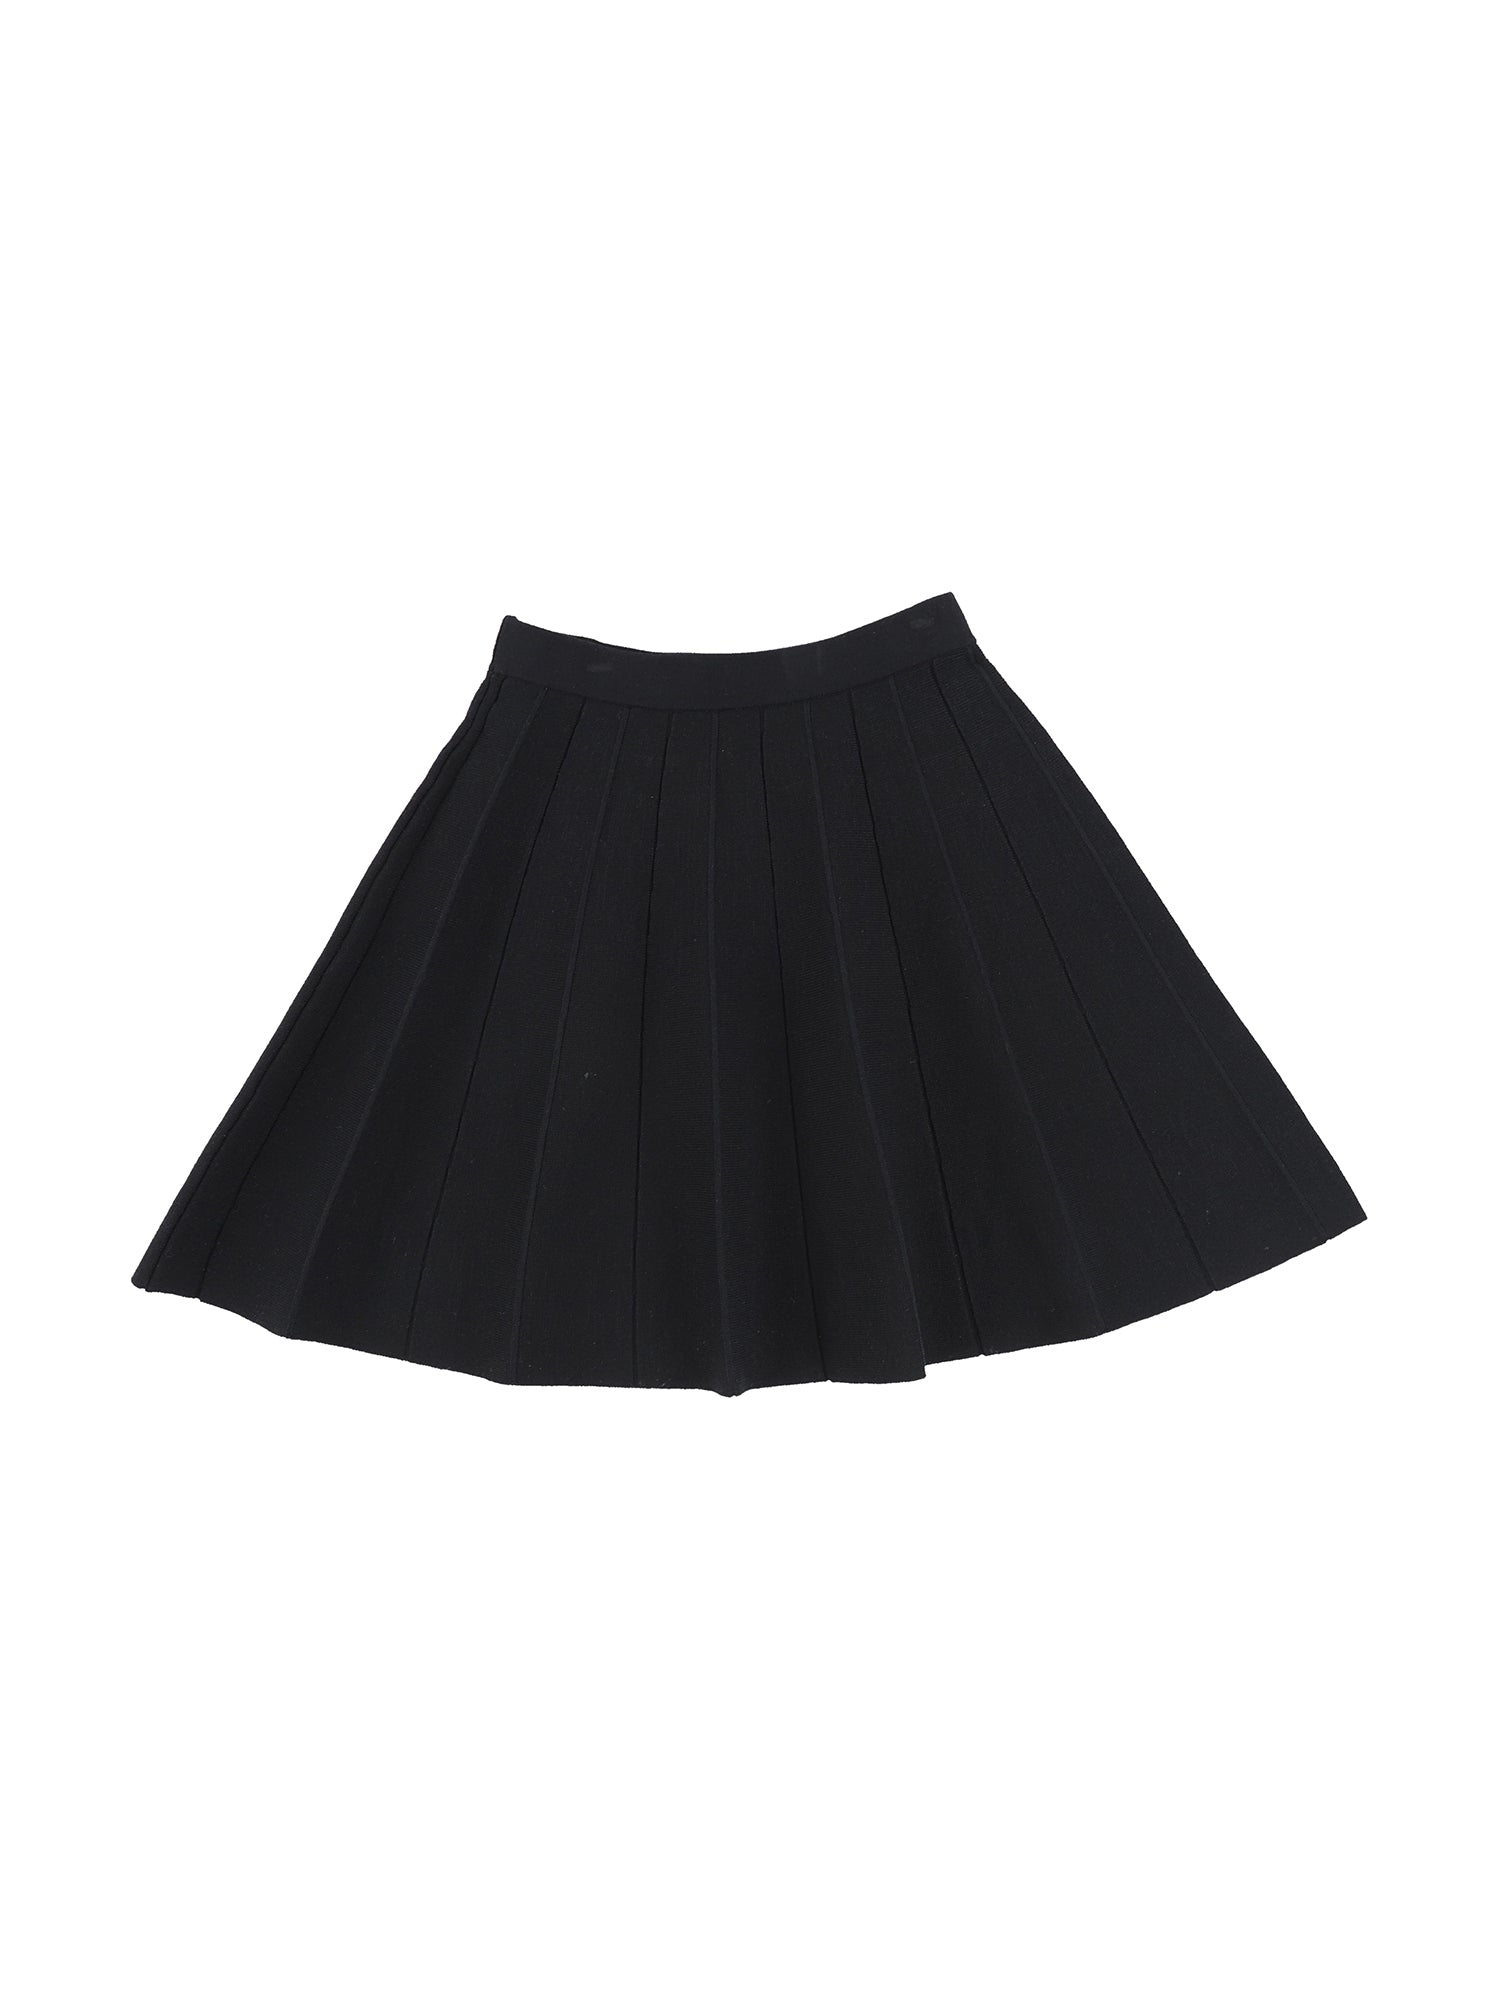 Modelle Temp Skirt - Skirts